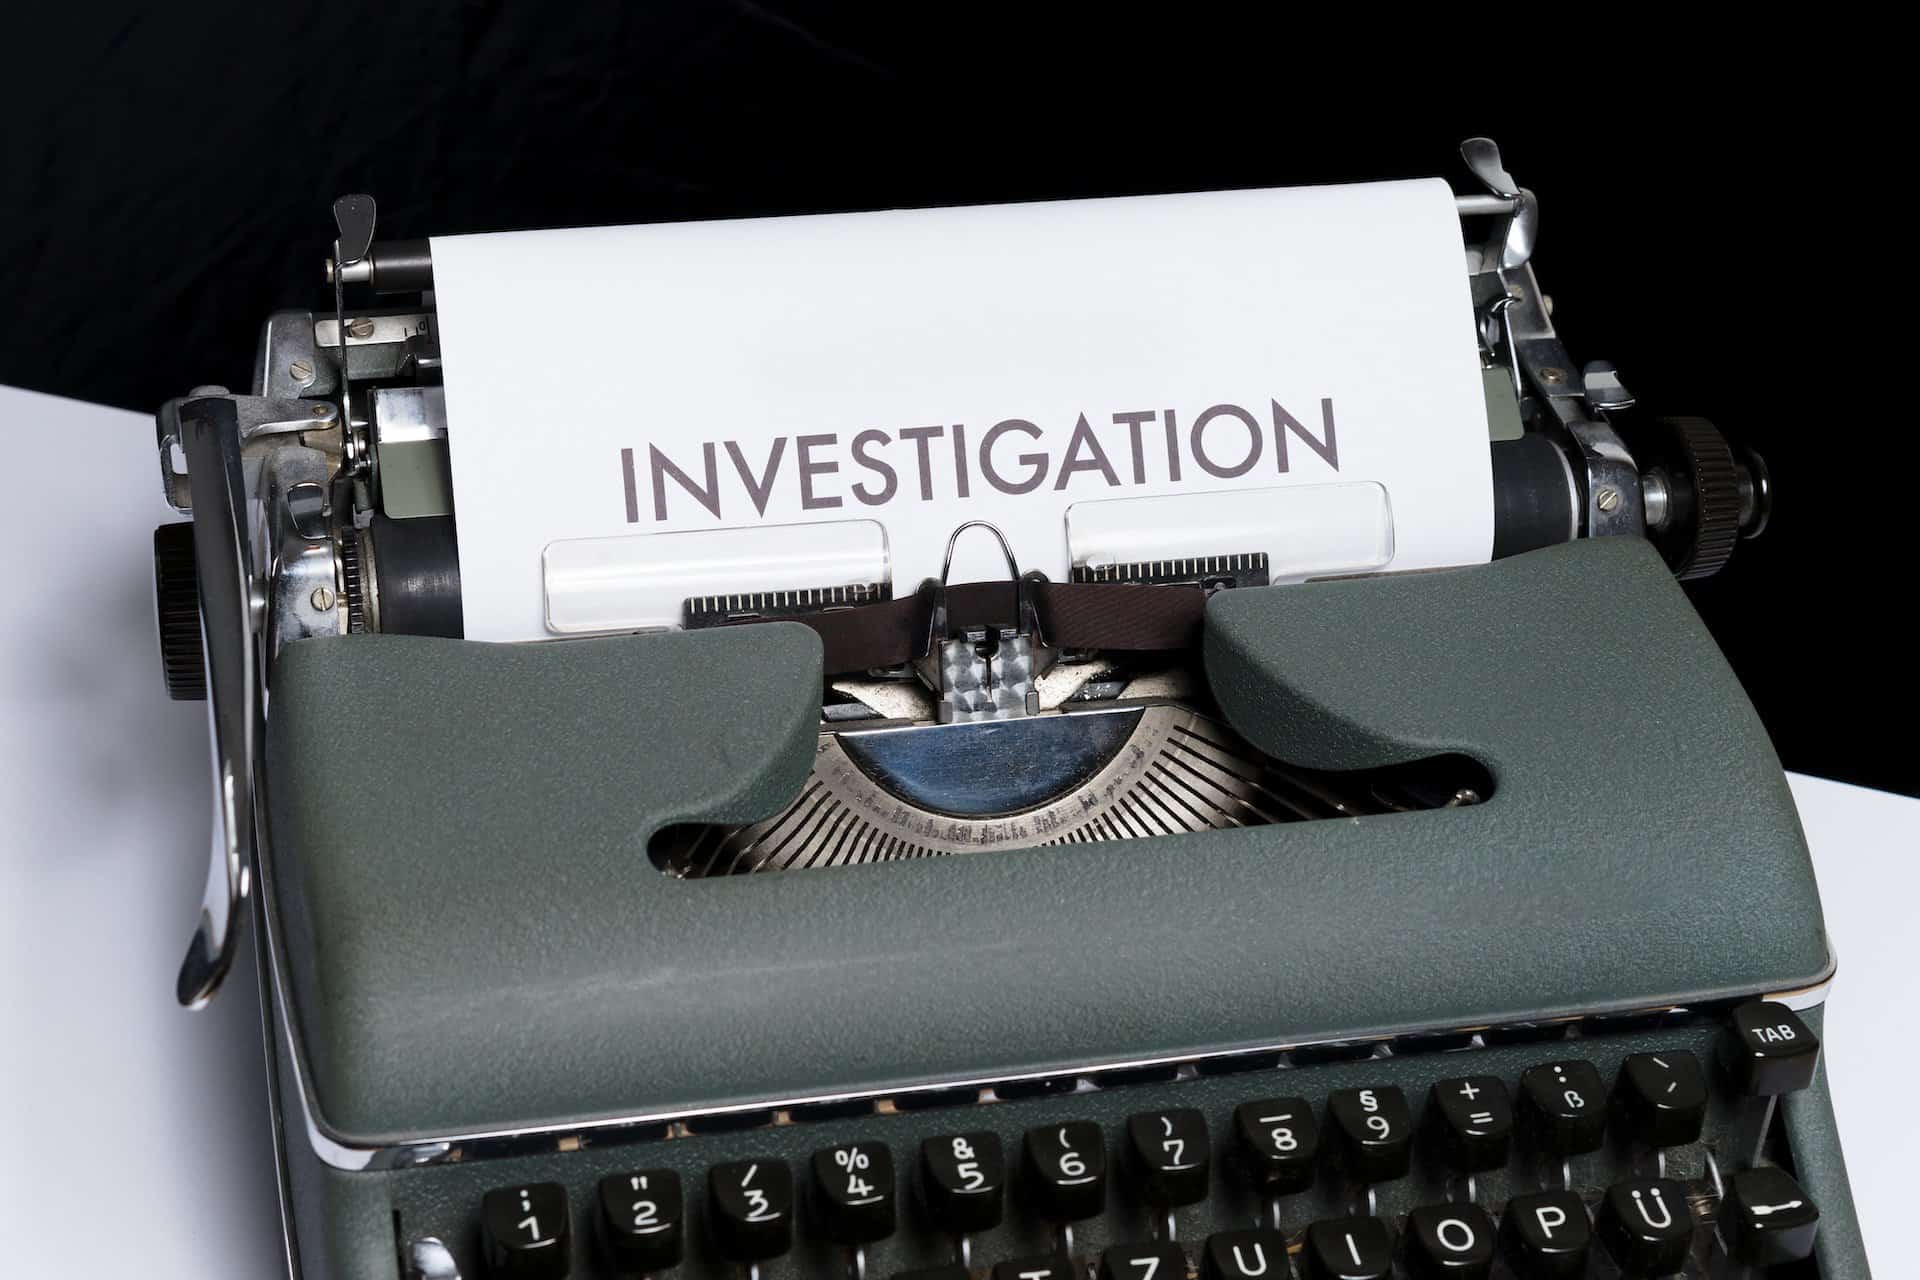 Typewriter that is printing "investigation"